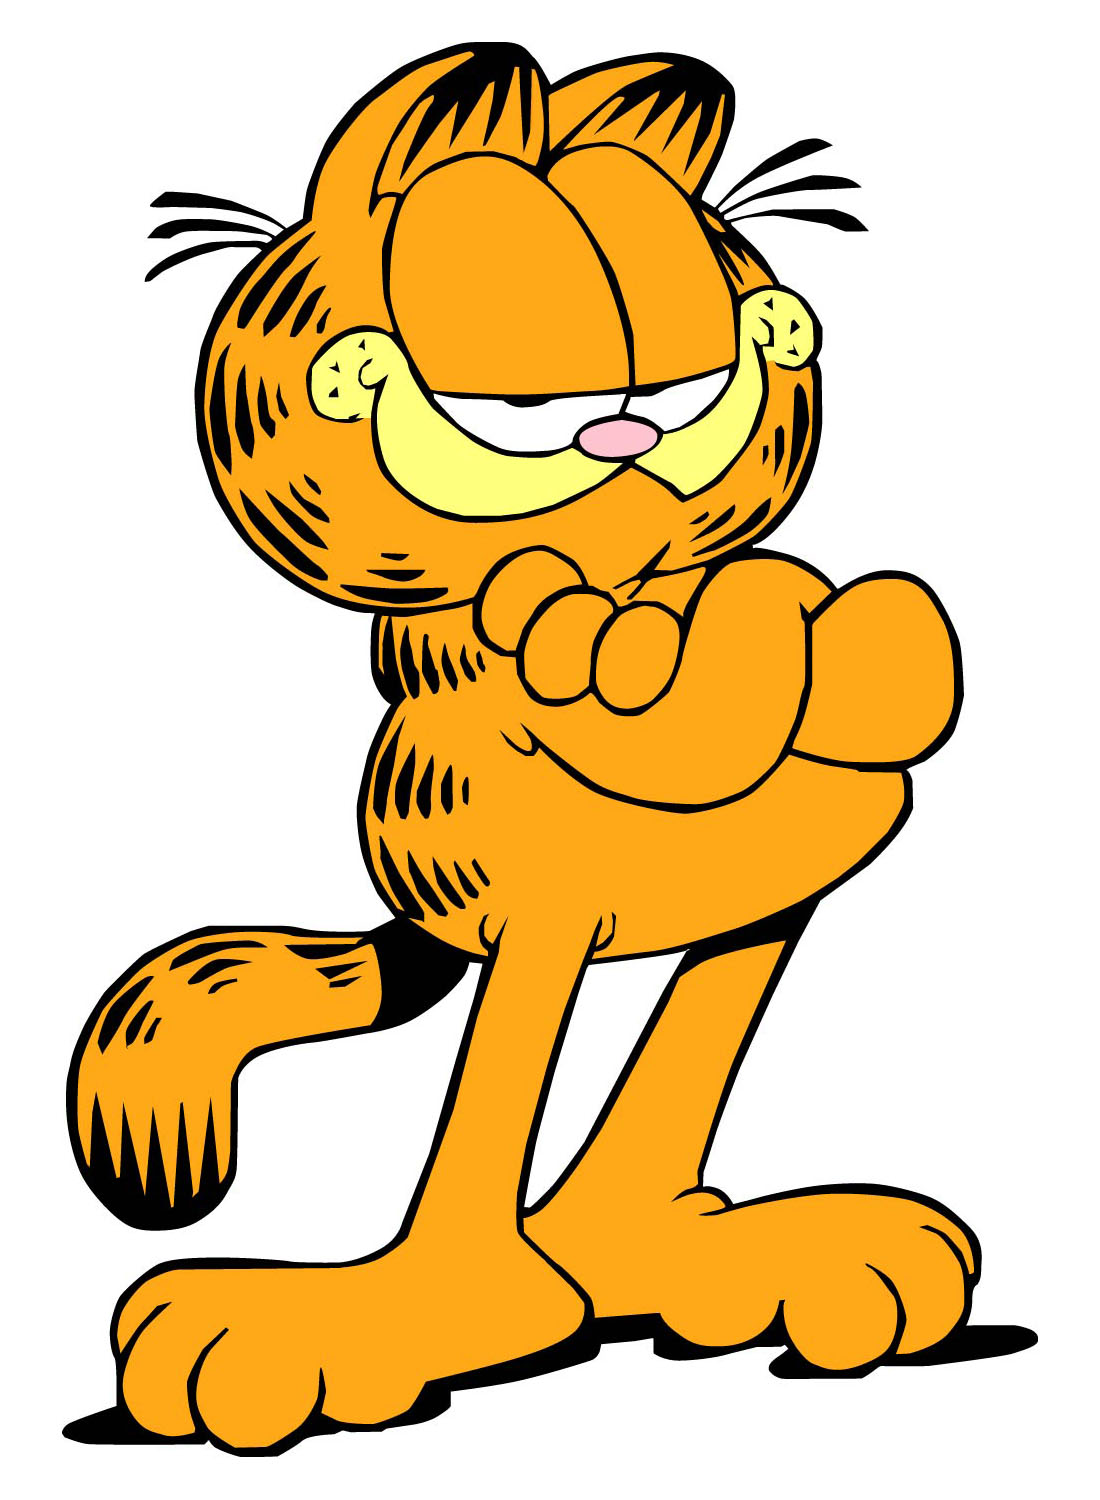 Garfieldstanding